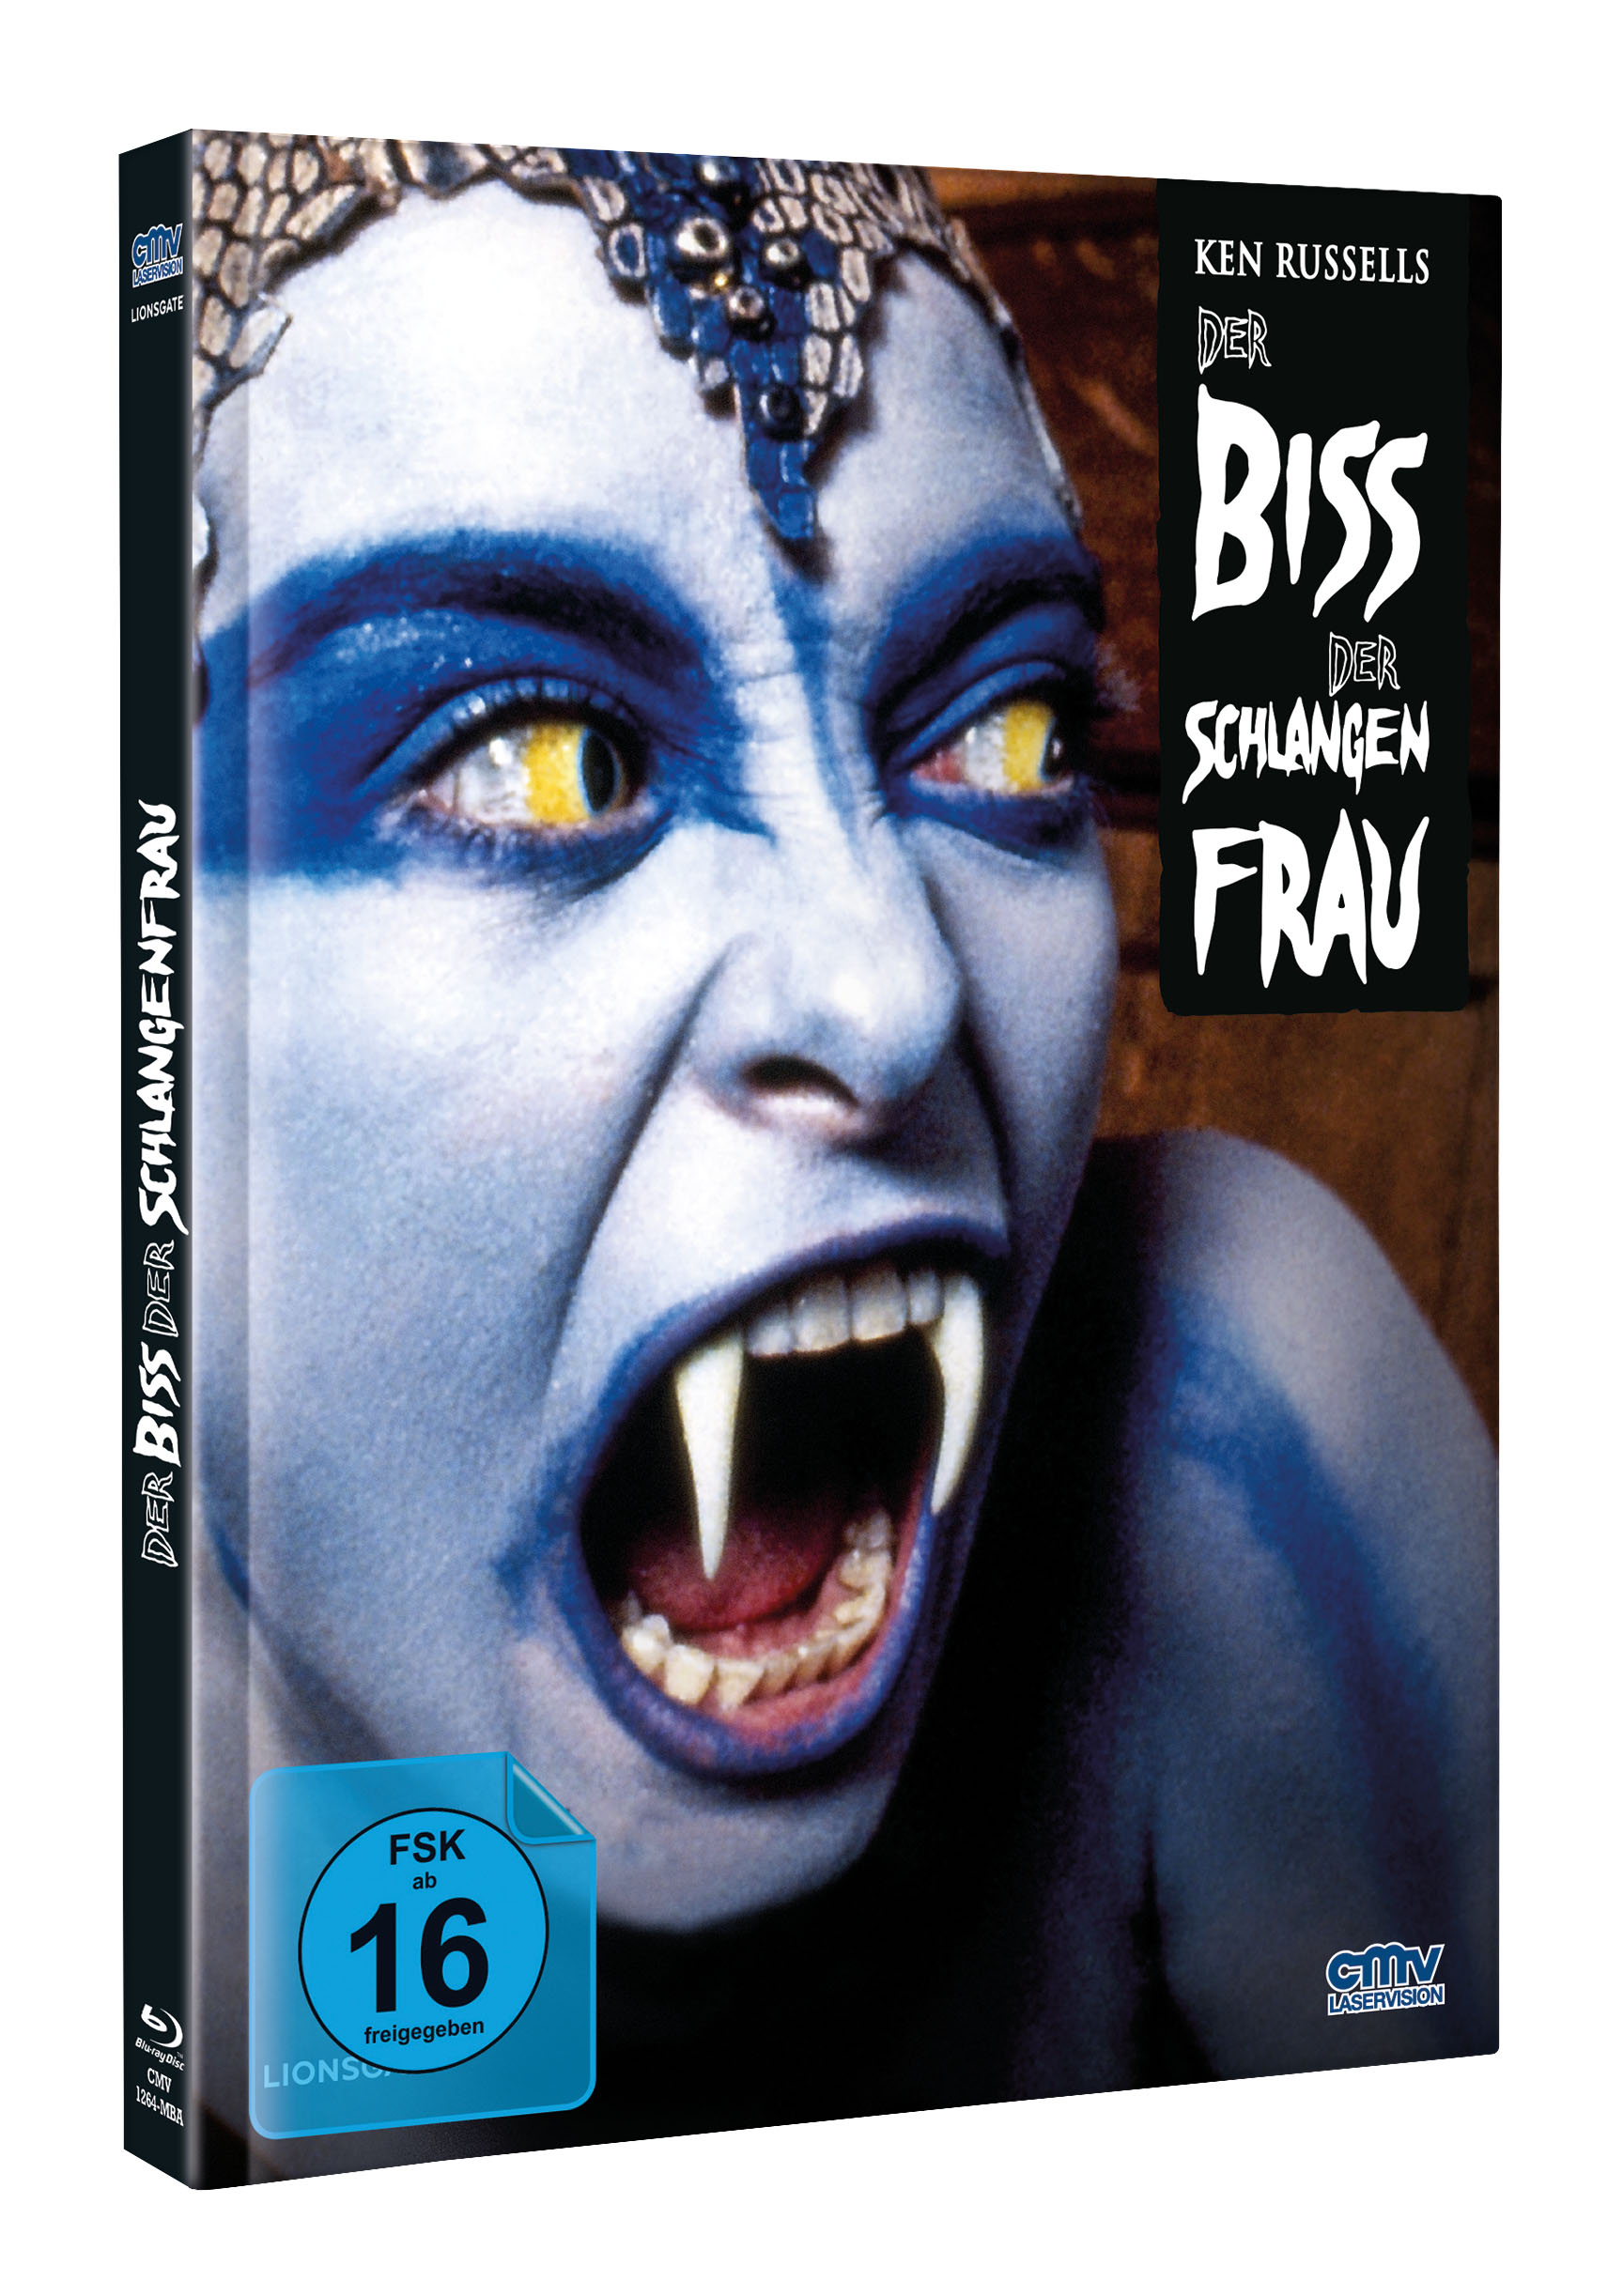 Der Biss der Schlangenfrau (Limitiertes Mediabook) (Blu-ray + DVD)